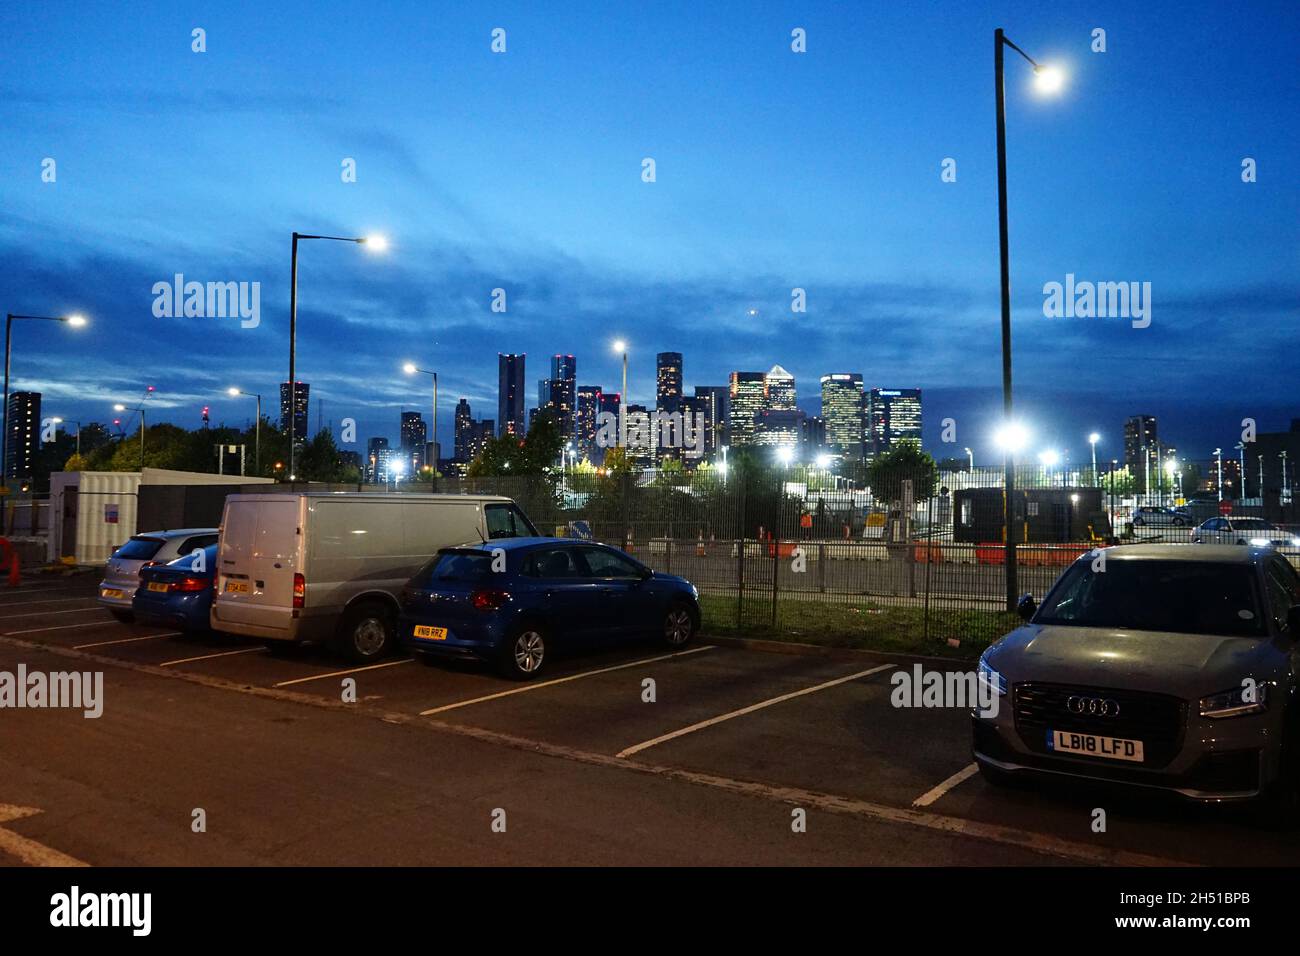 Une vue depuis le parking la nuit à l'hôtel O2 dans la péninsule de Greenwich, Londres, Angleterre, royaume-uni Banque D'Images